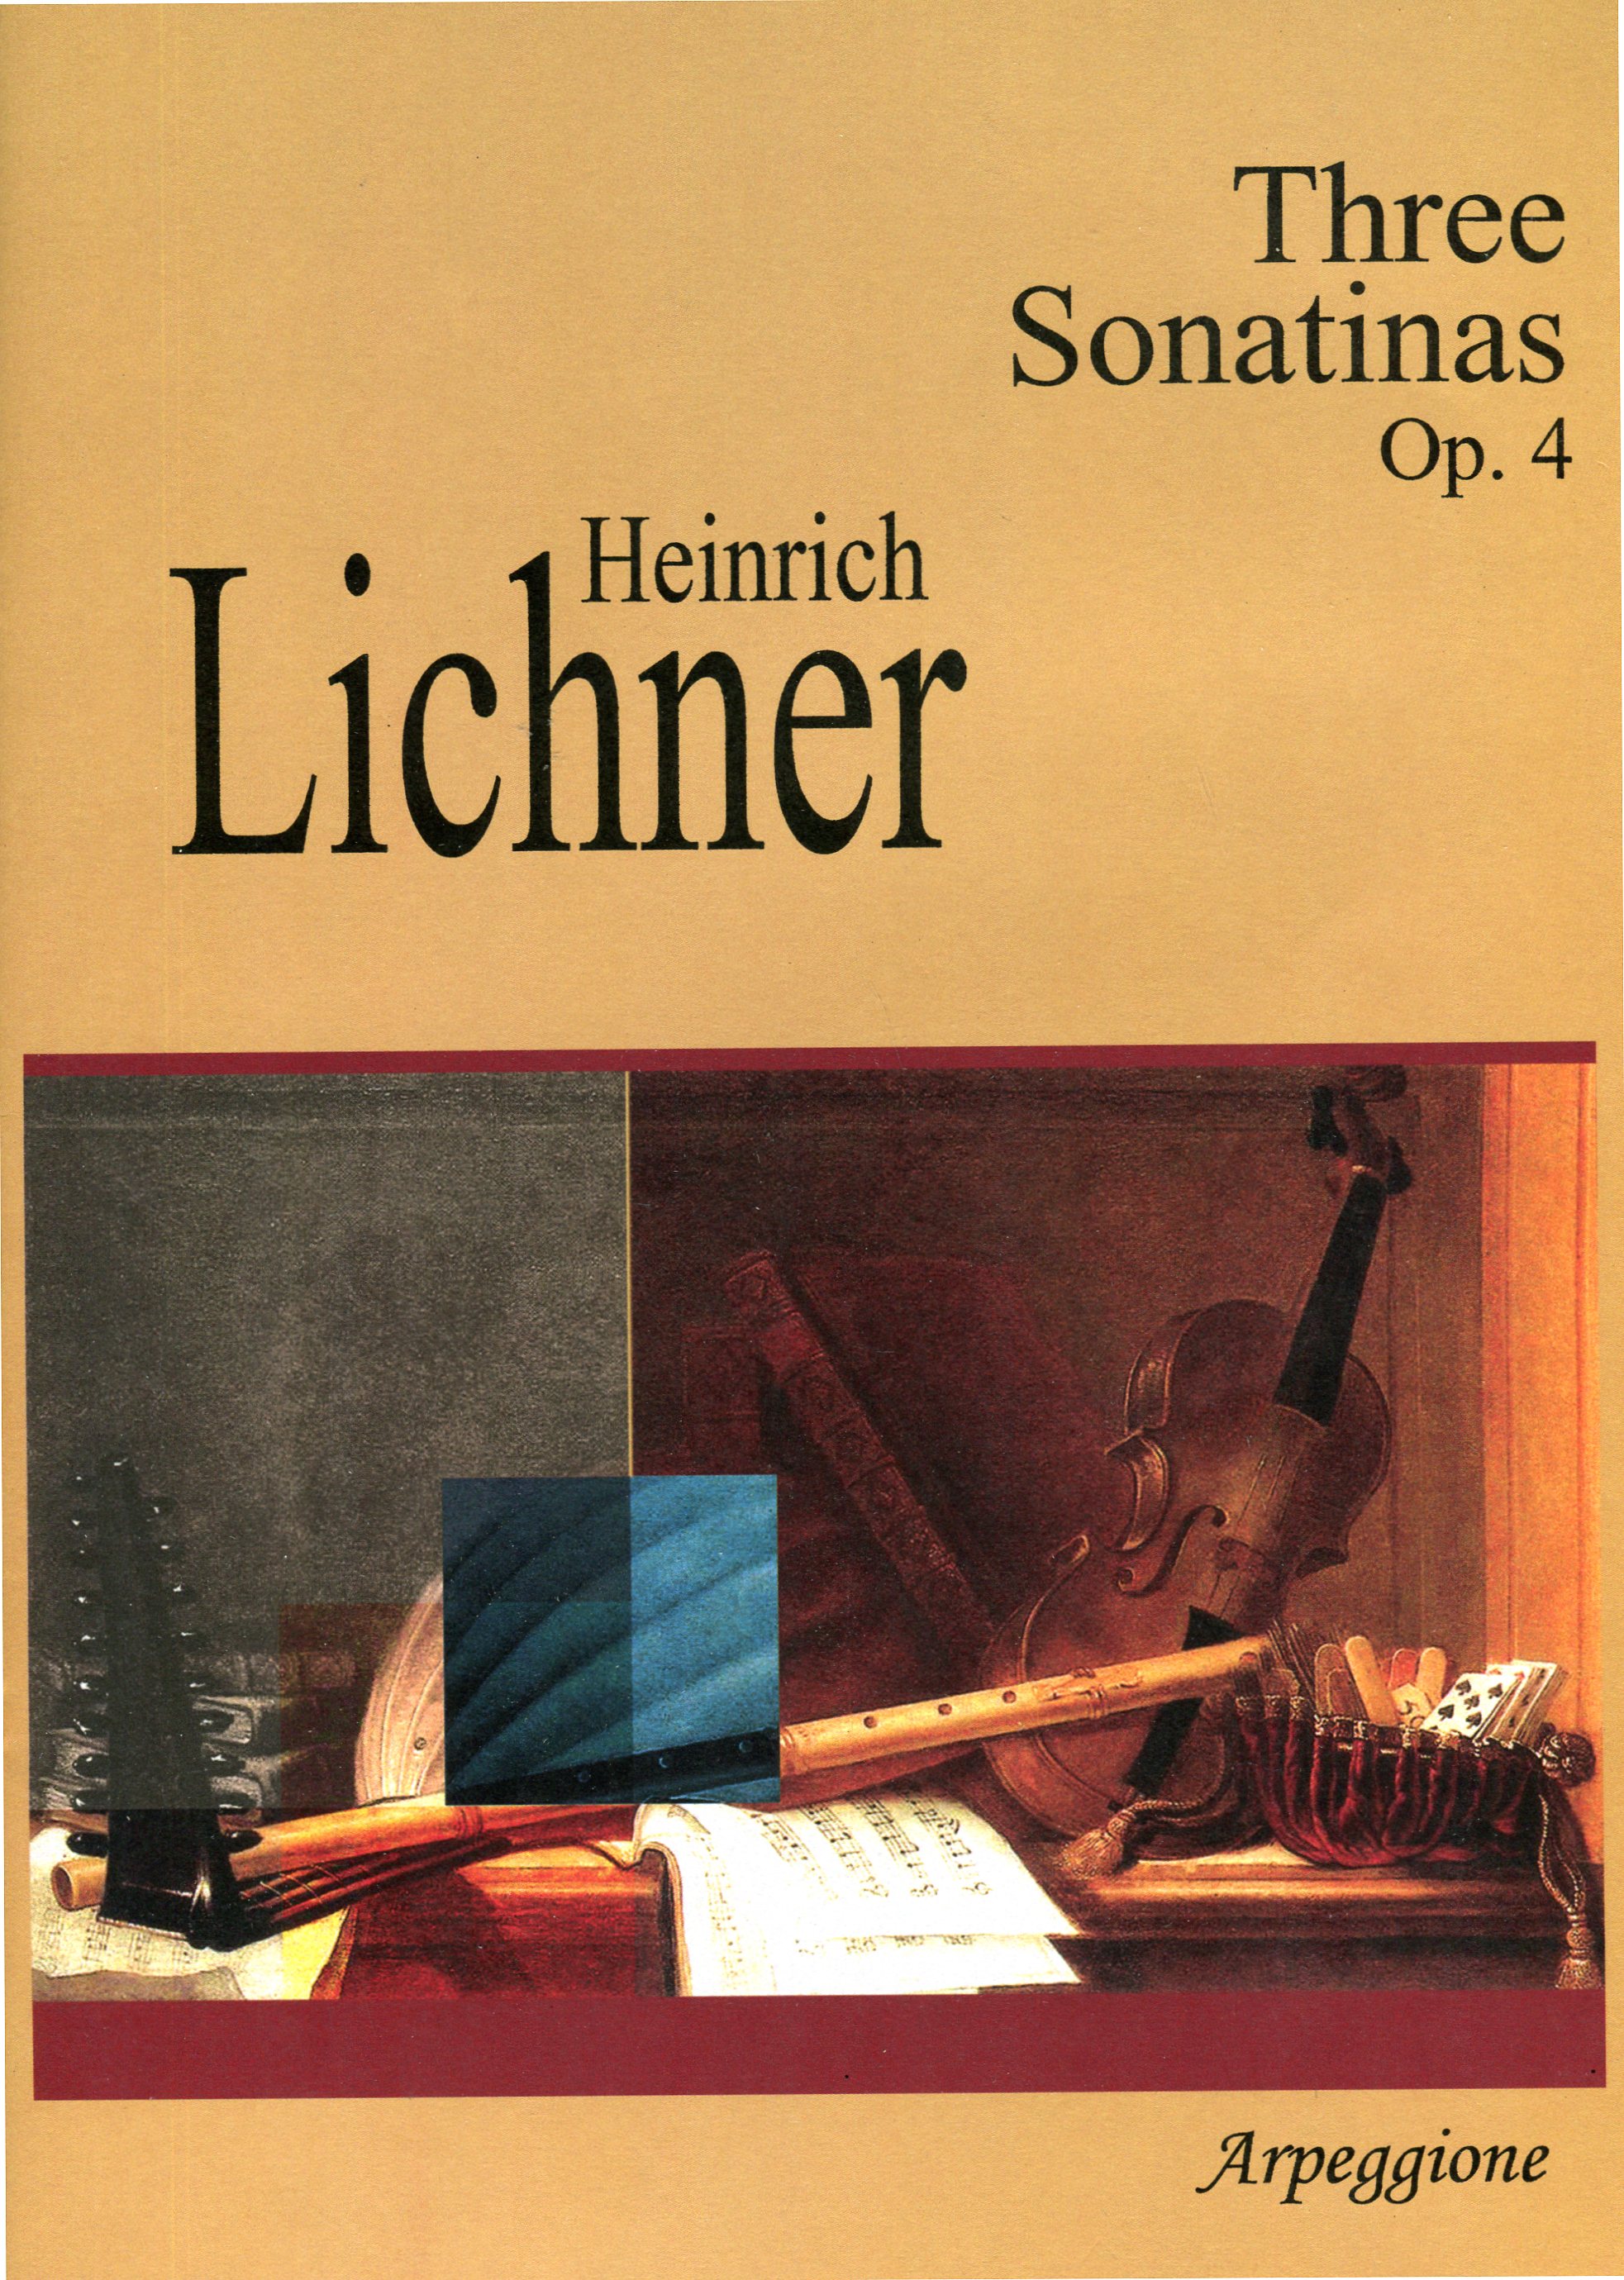 Three Sonatinas Op. 4 - Heinrich Lichner